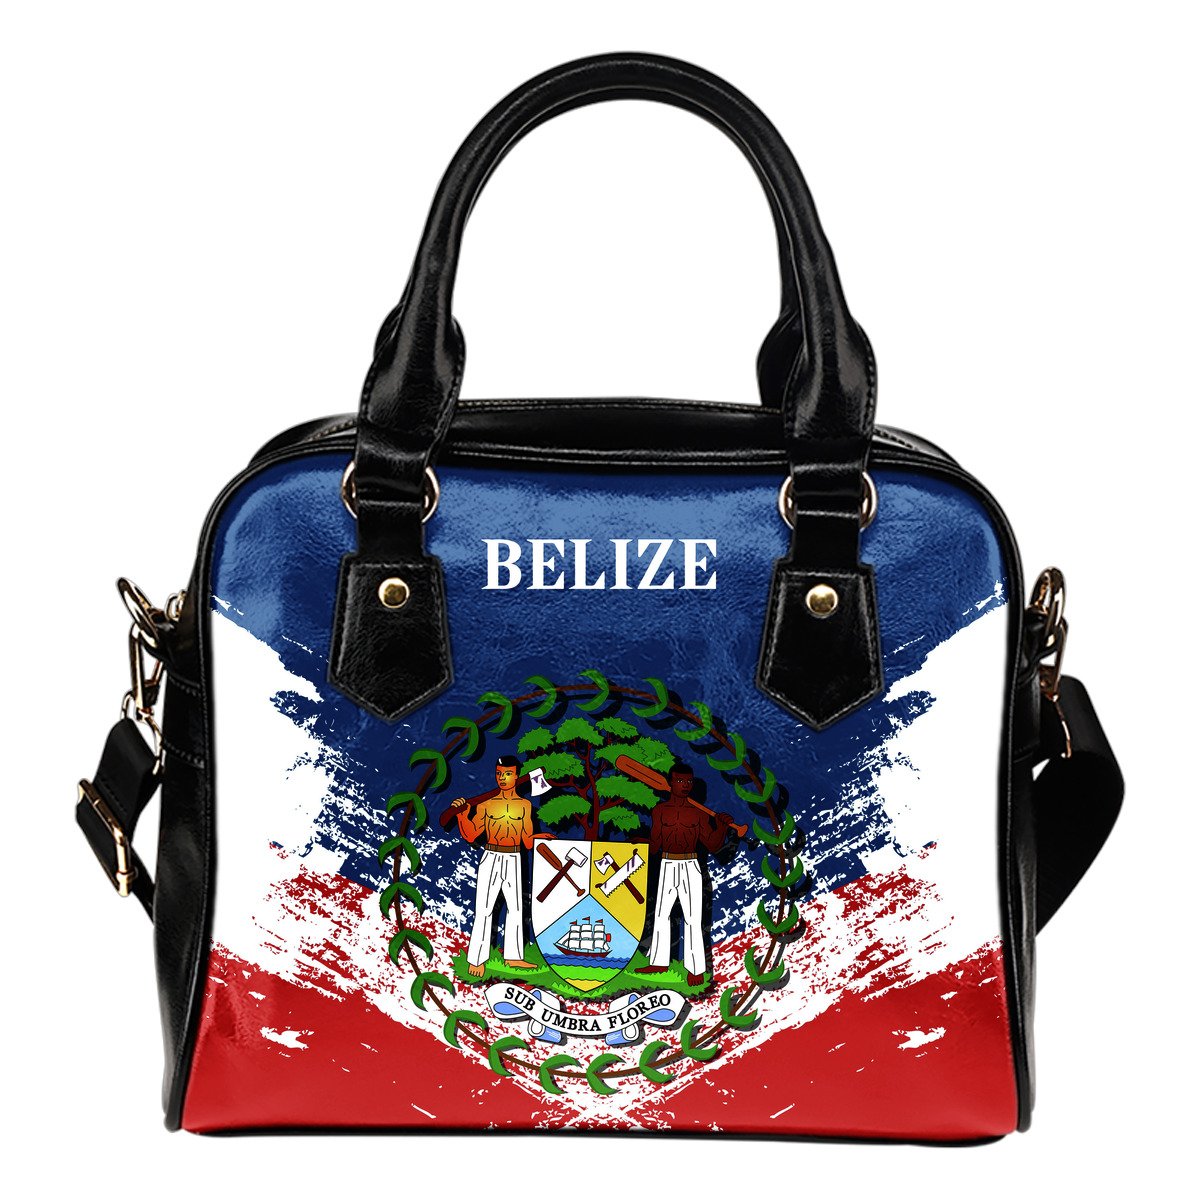 belize-special-shoulder-handbag